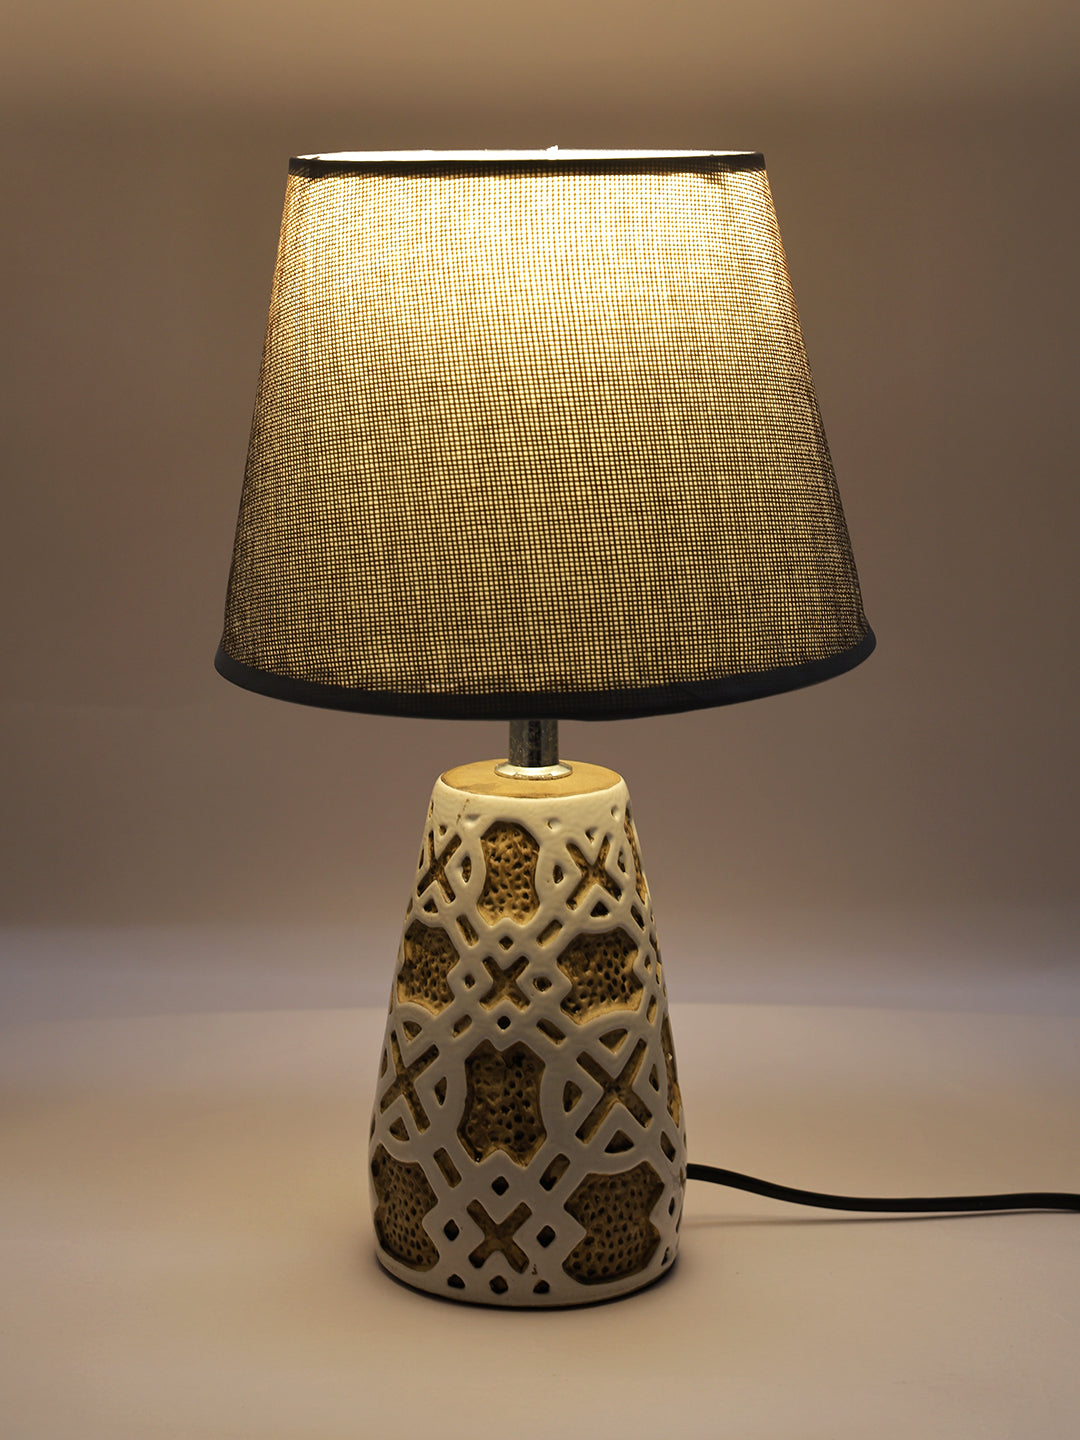 Unique Design Ceramic Table Lamp